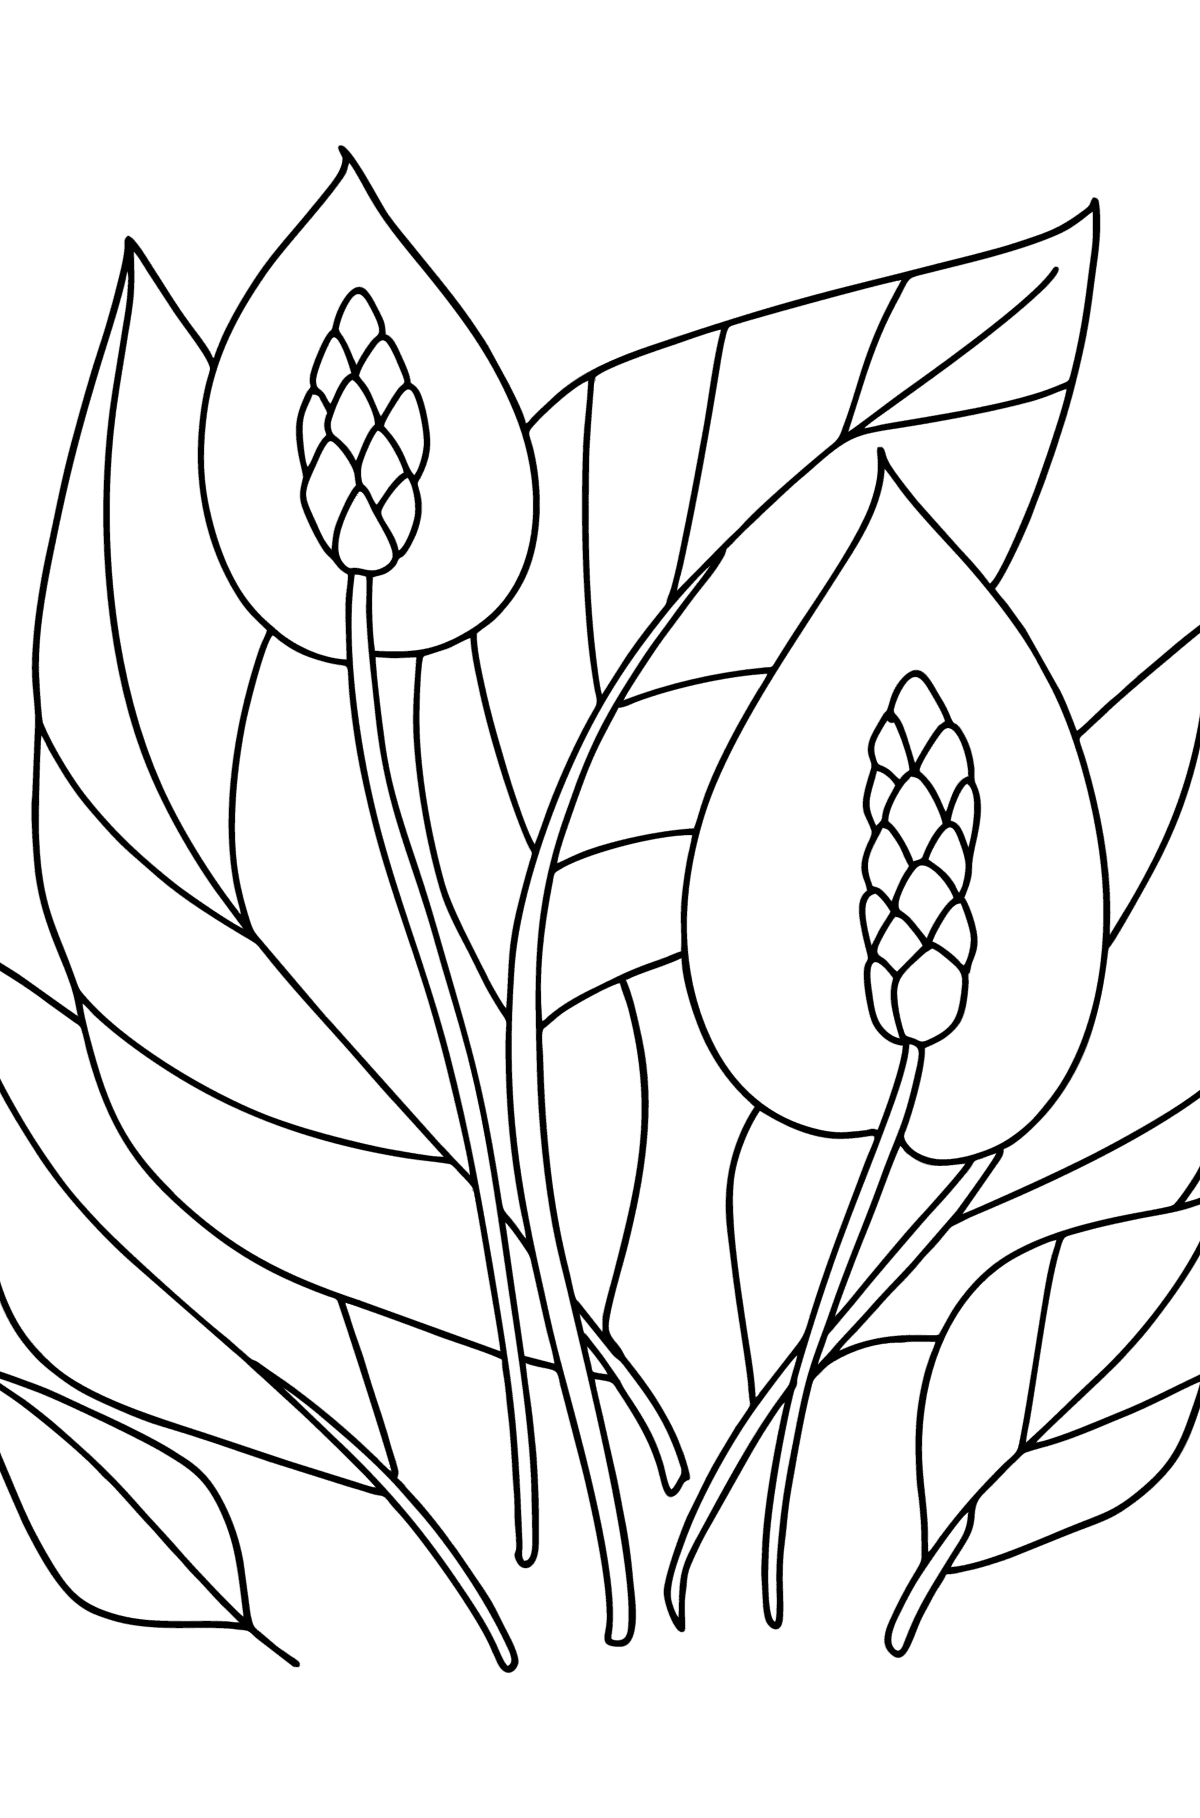 Dibujo de Spathiphyllum para colorear - Dibujos para Colorear para Niños